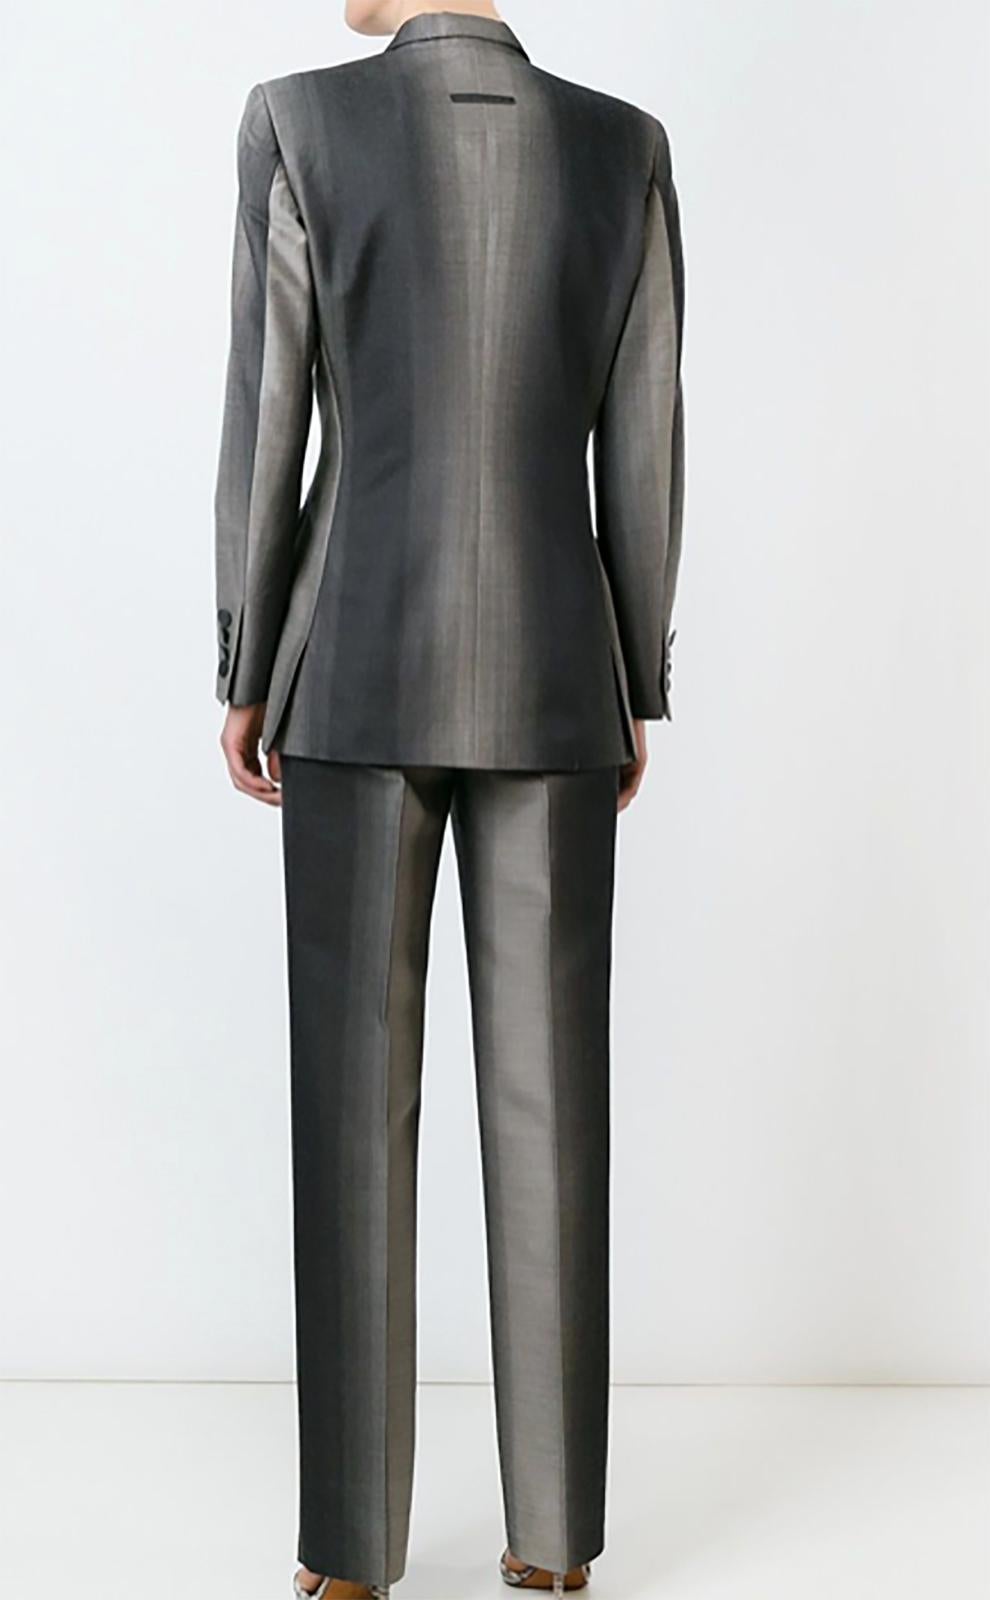 Black Jean Paul Gaultier Degrade Trouser Pant Suit 